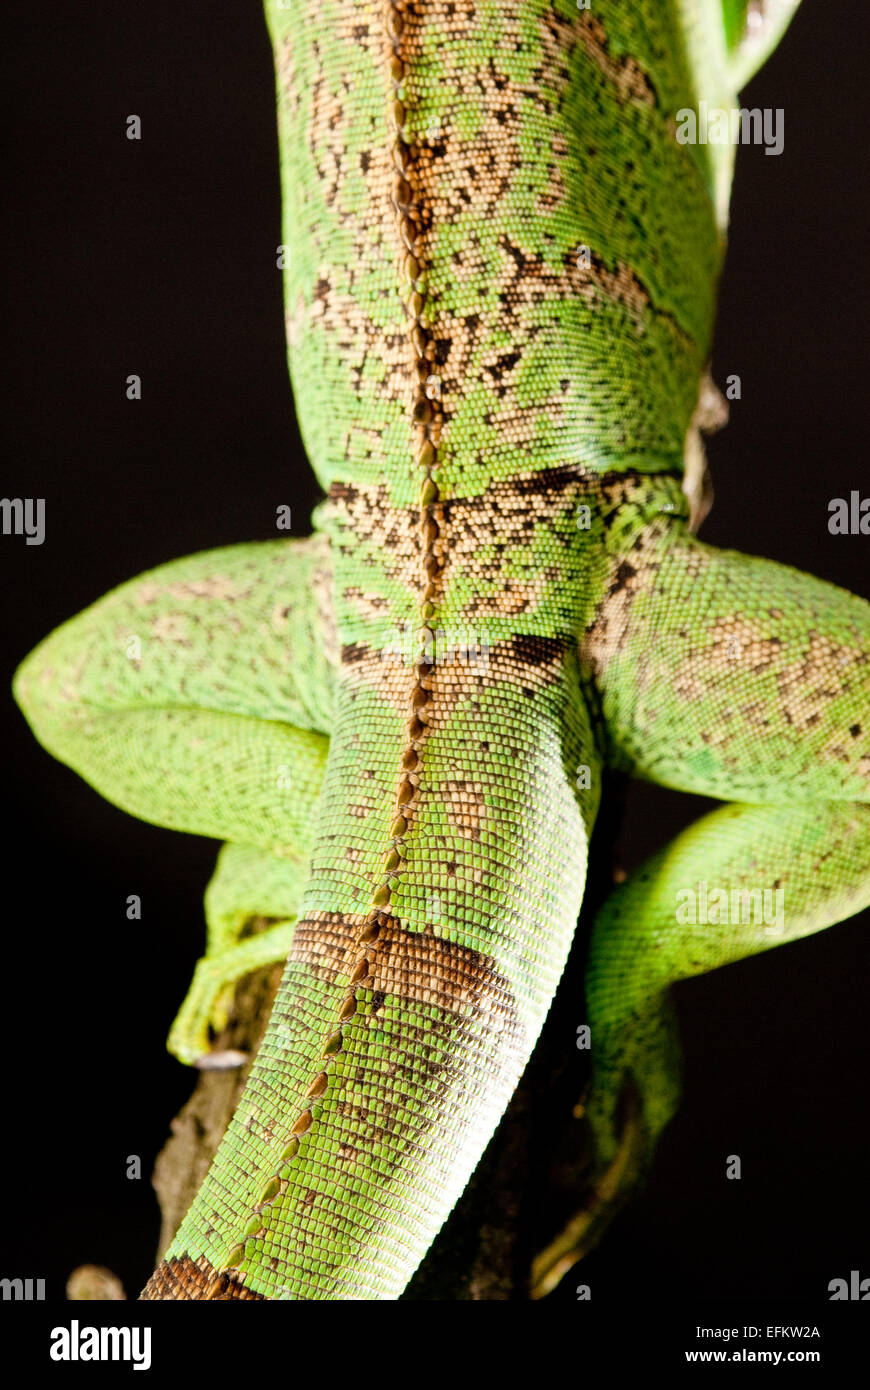 iguana closeup, on black background Stock Photo